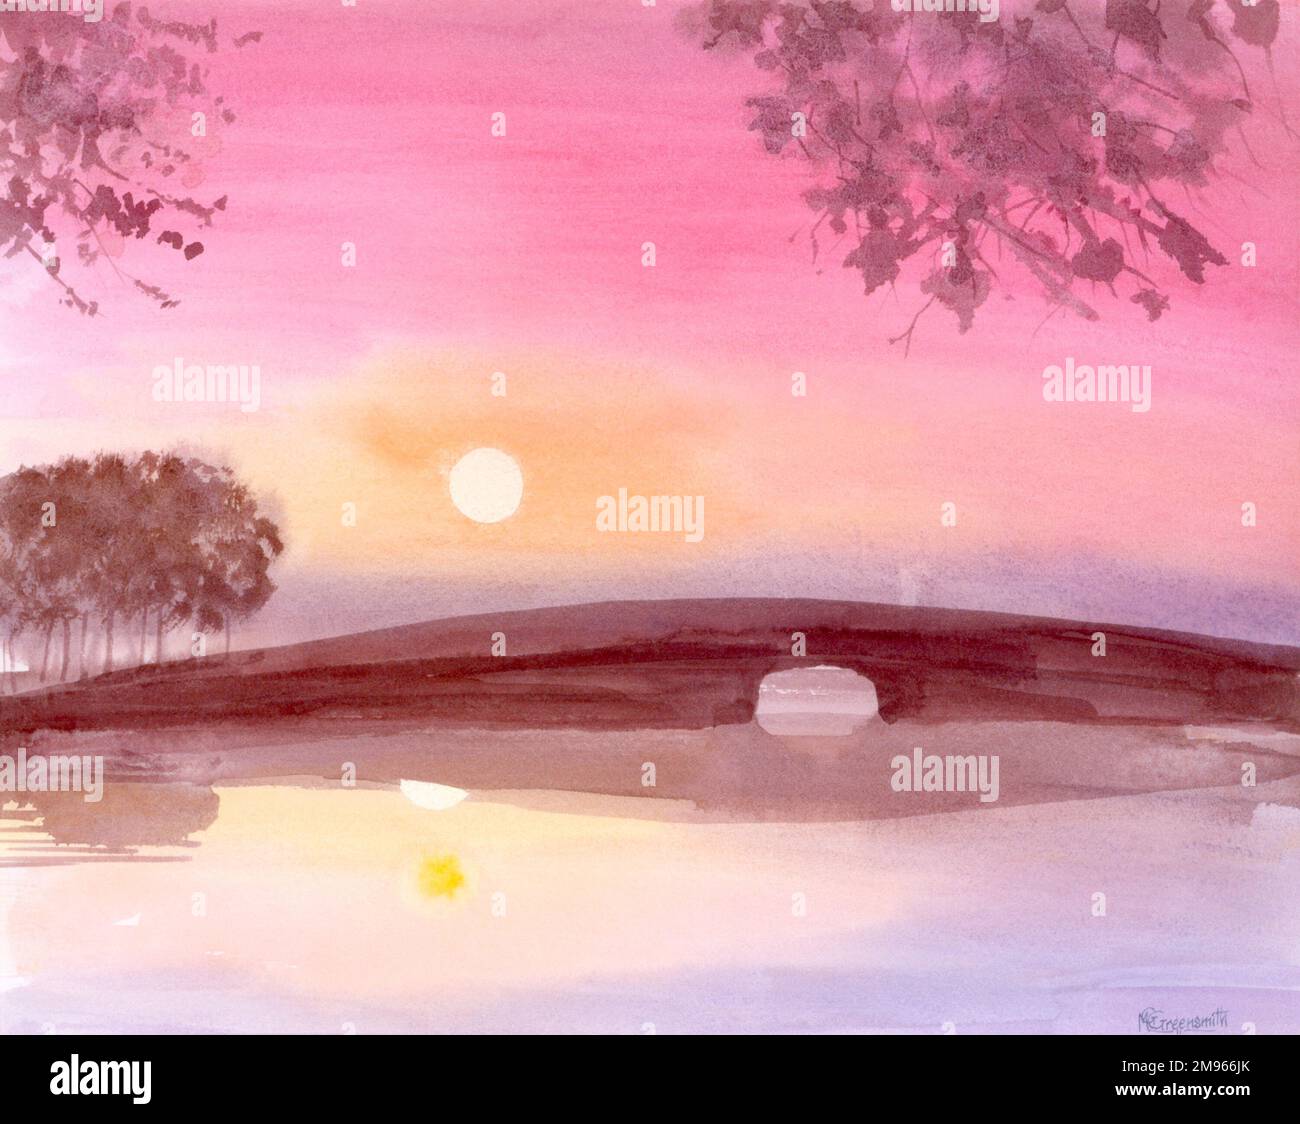 A Dawn River - vue vers un pont bas qui chevauche un large étang ou ruisseau, tandis que le soleil du jour nouveau, réfléchi dans l'eau fixe, s'élève dans le ciel du matin. Peinture par Malcolm Greensmith Banque D'Images